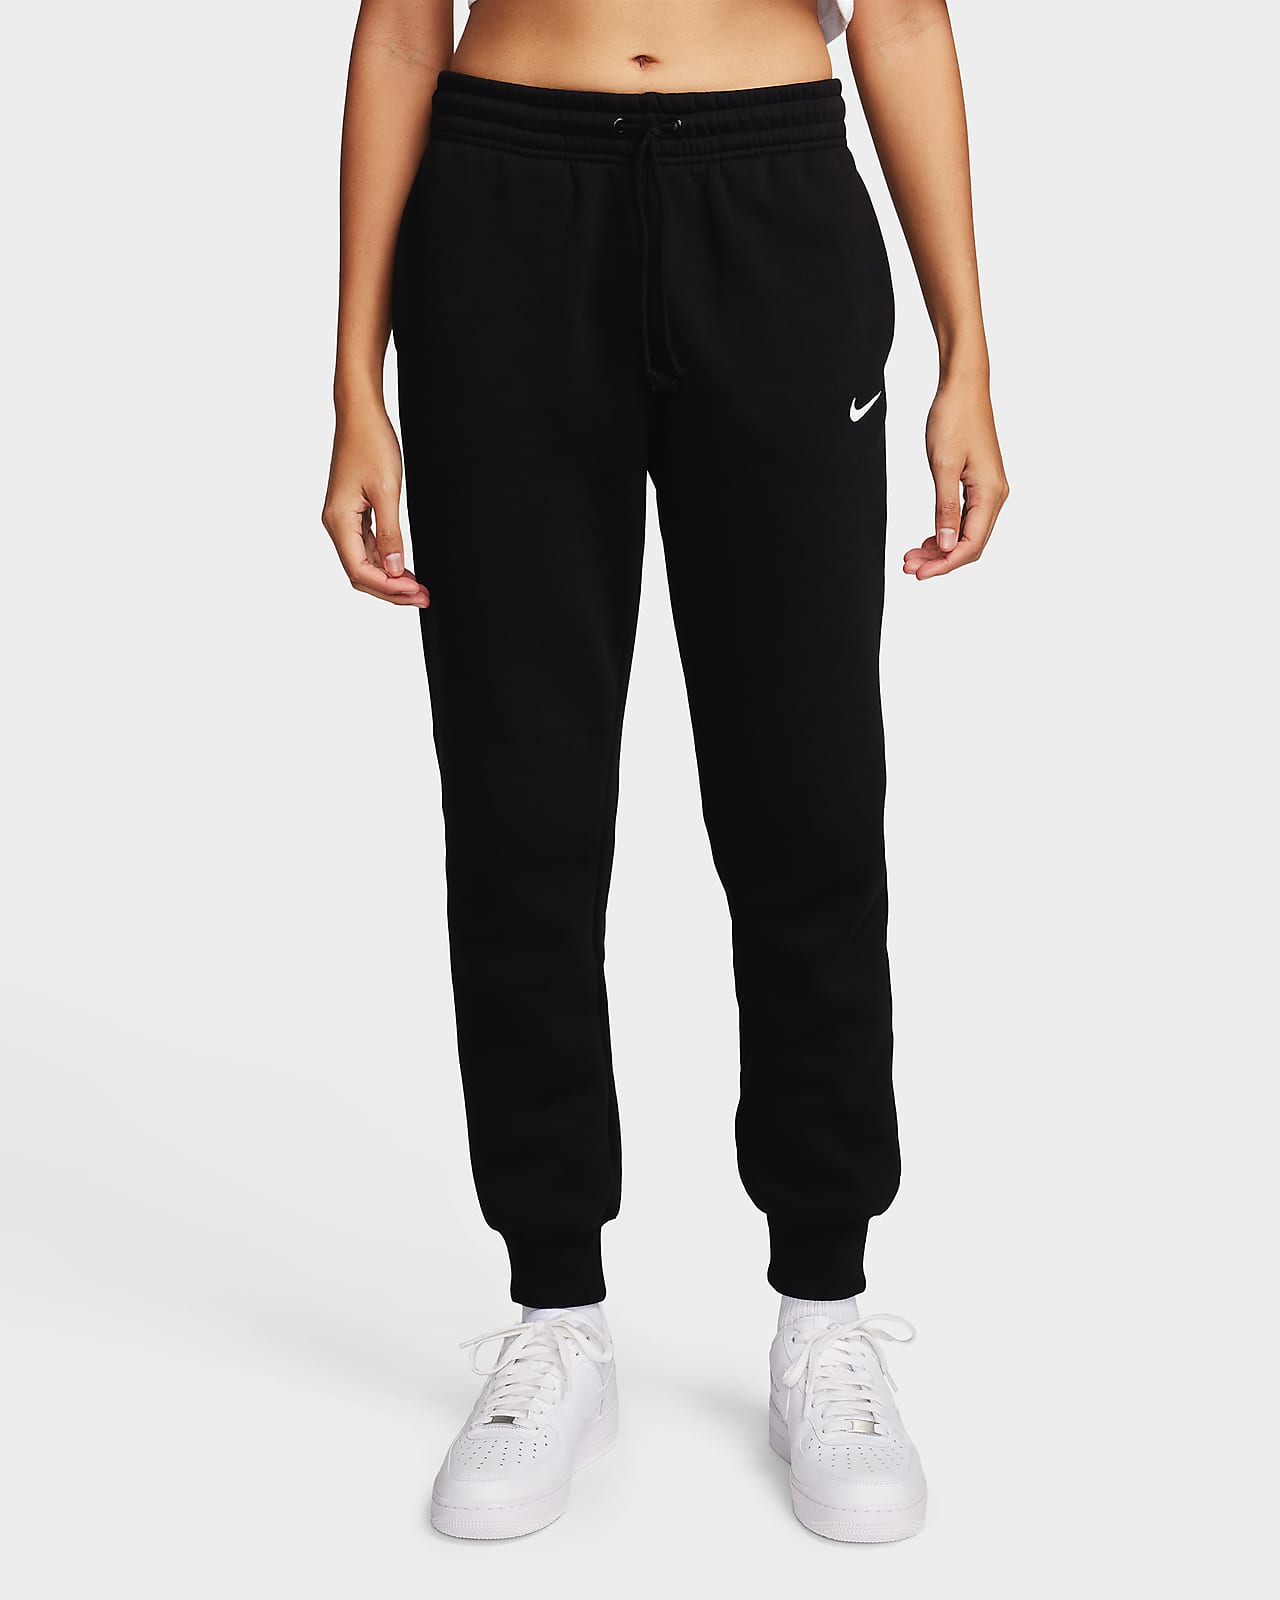 Γυναικείο παντελόνι φόρμας μεσαίου καβάλου Nike Sportswear Phoenix Fleece